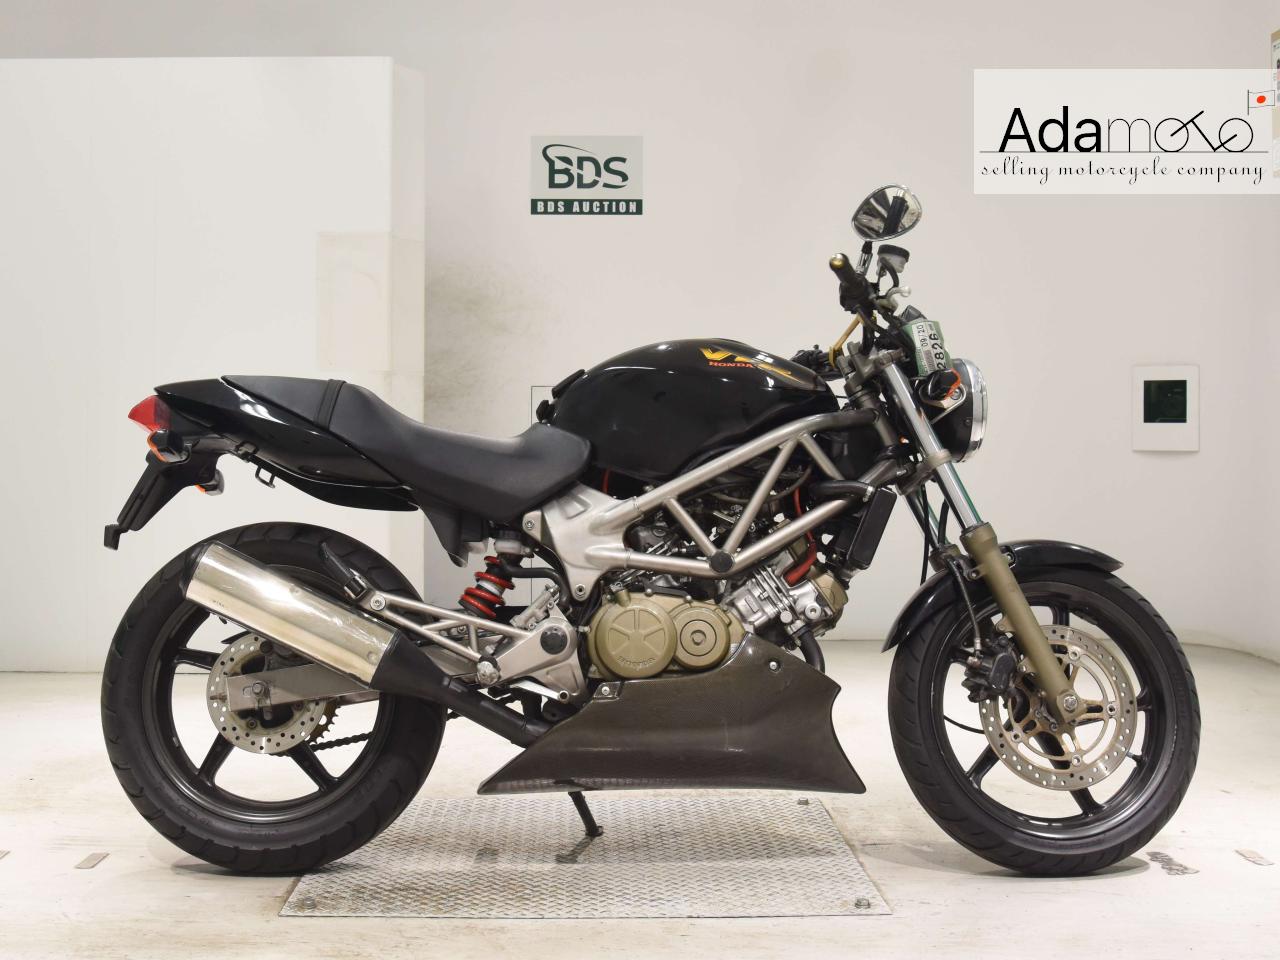 Honda VTR250 - Adamoto - Motorcycles from Japan